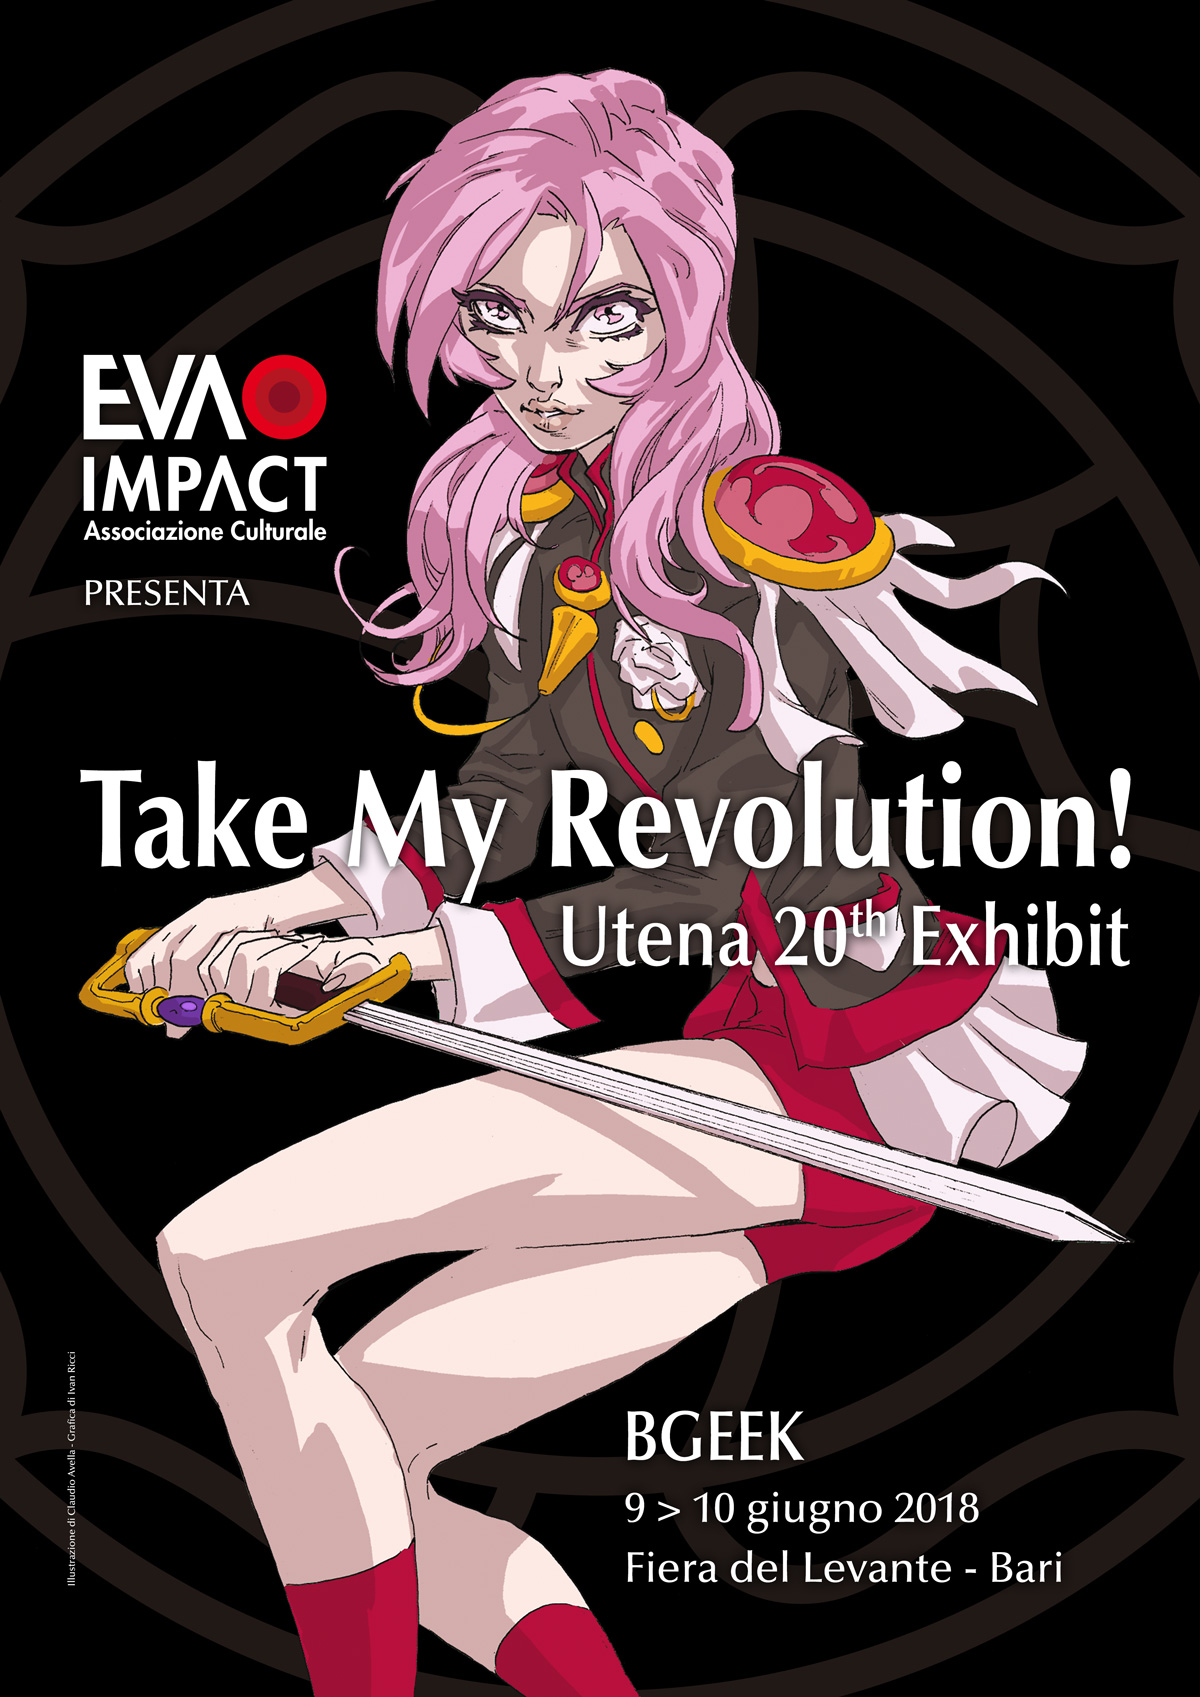 Take my Revolution! Utena 20th Exhibit